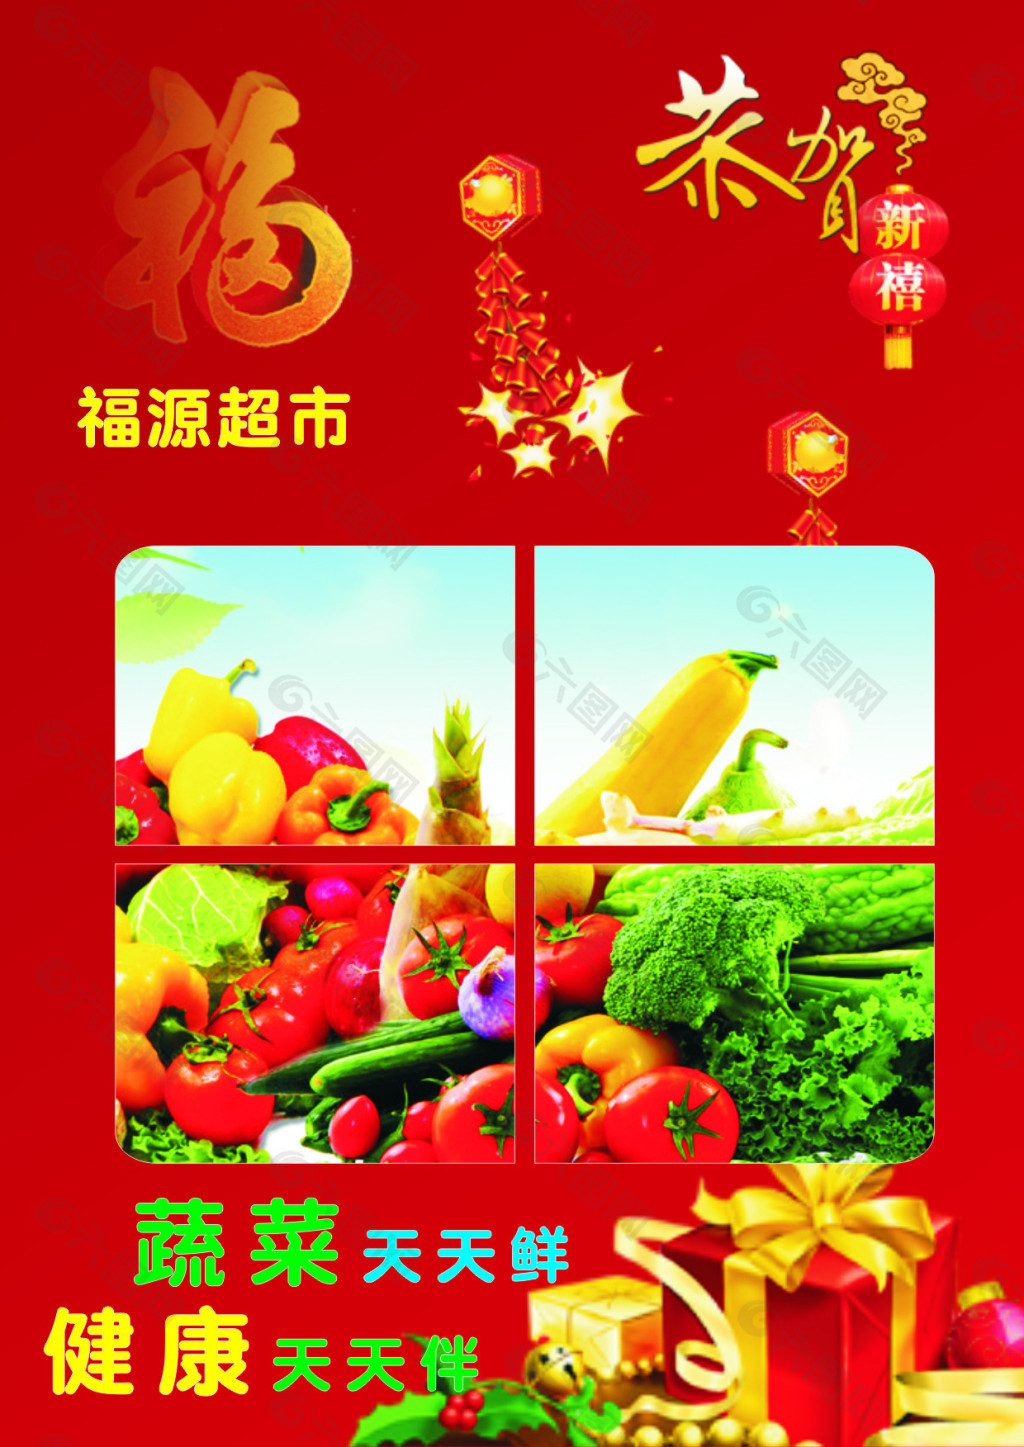 超市新年促销活动宣传海报平面广告素材免费下载(图片编号:4919492)